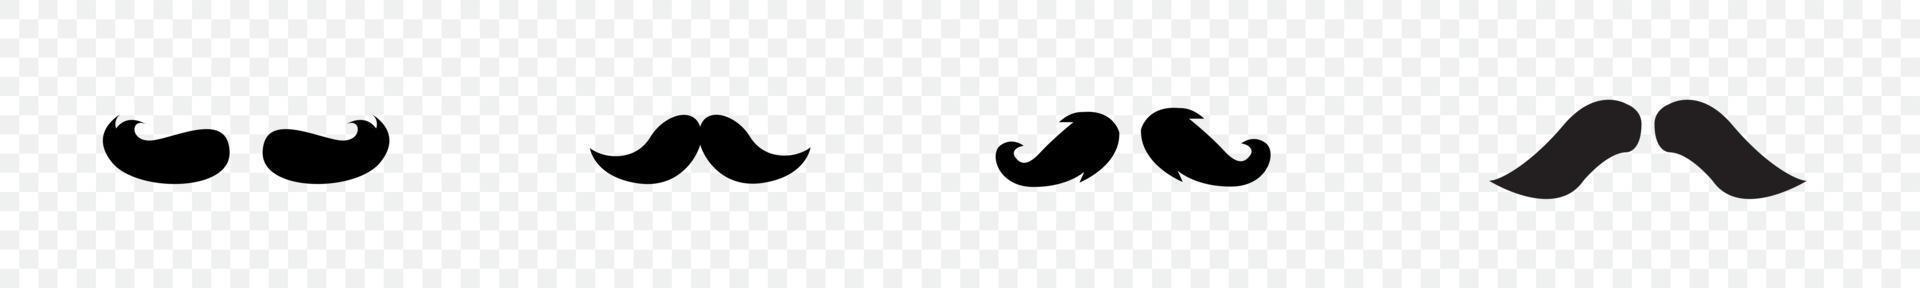 jeu d'icônes de moustache. moustaches noires de style ancien isolées sur fond transparent vecteur